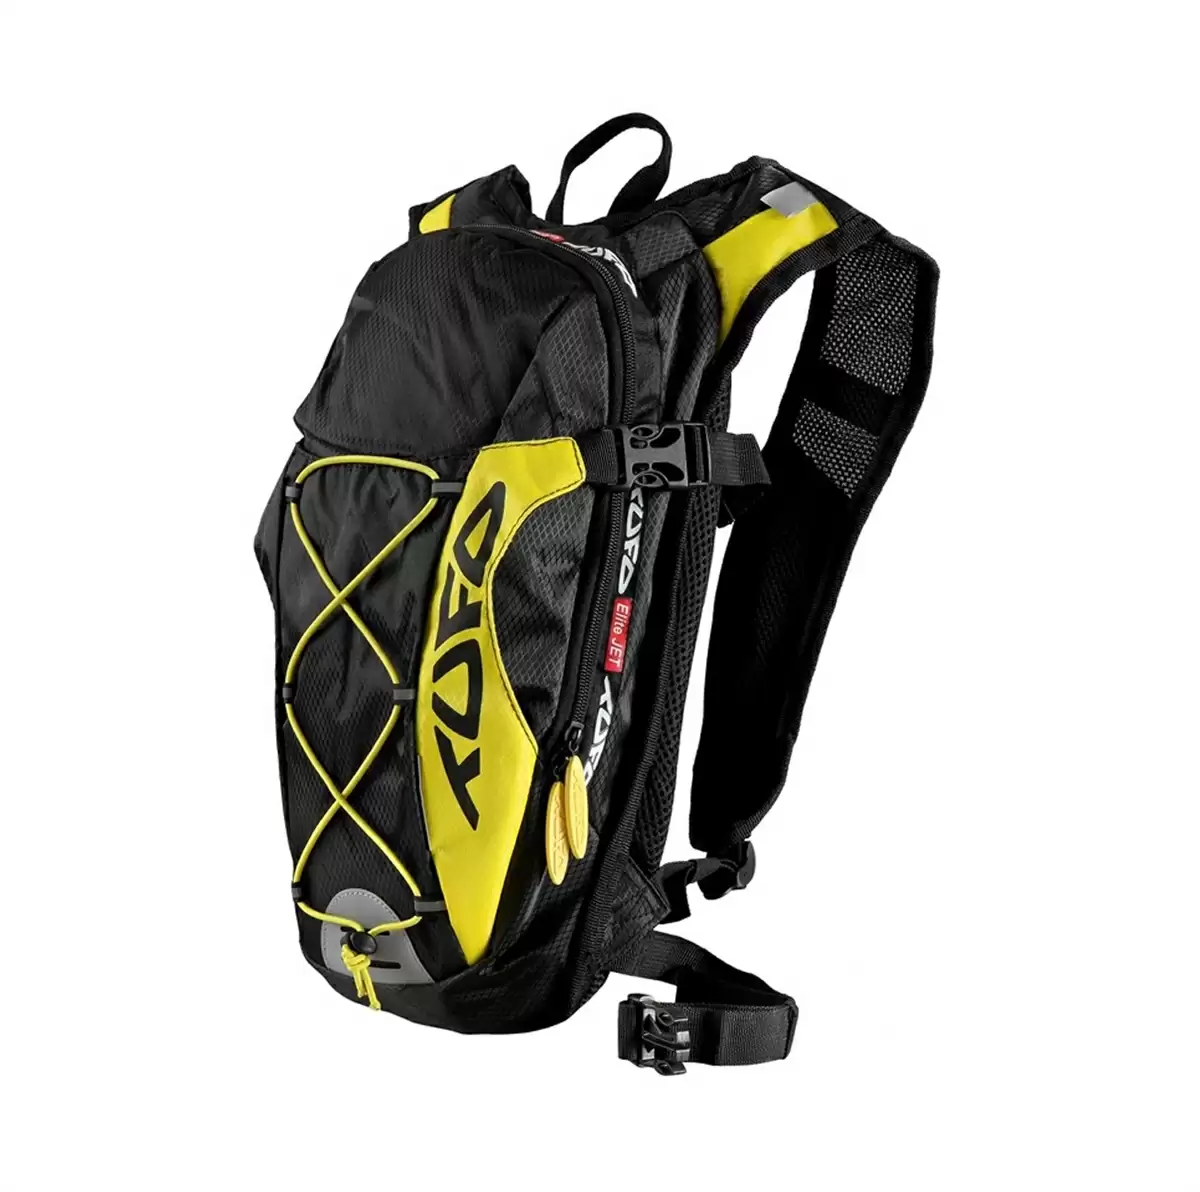 Backpack multifonctionnel cycliste 10l jaune noir - image